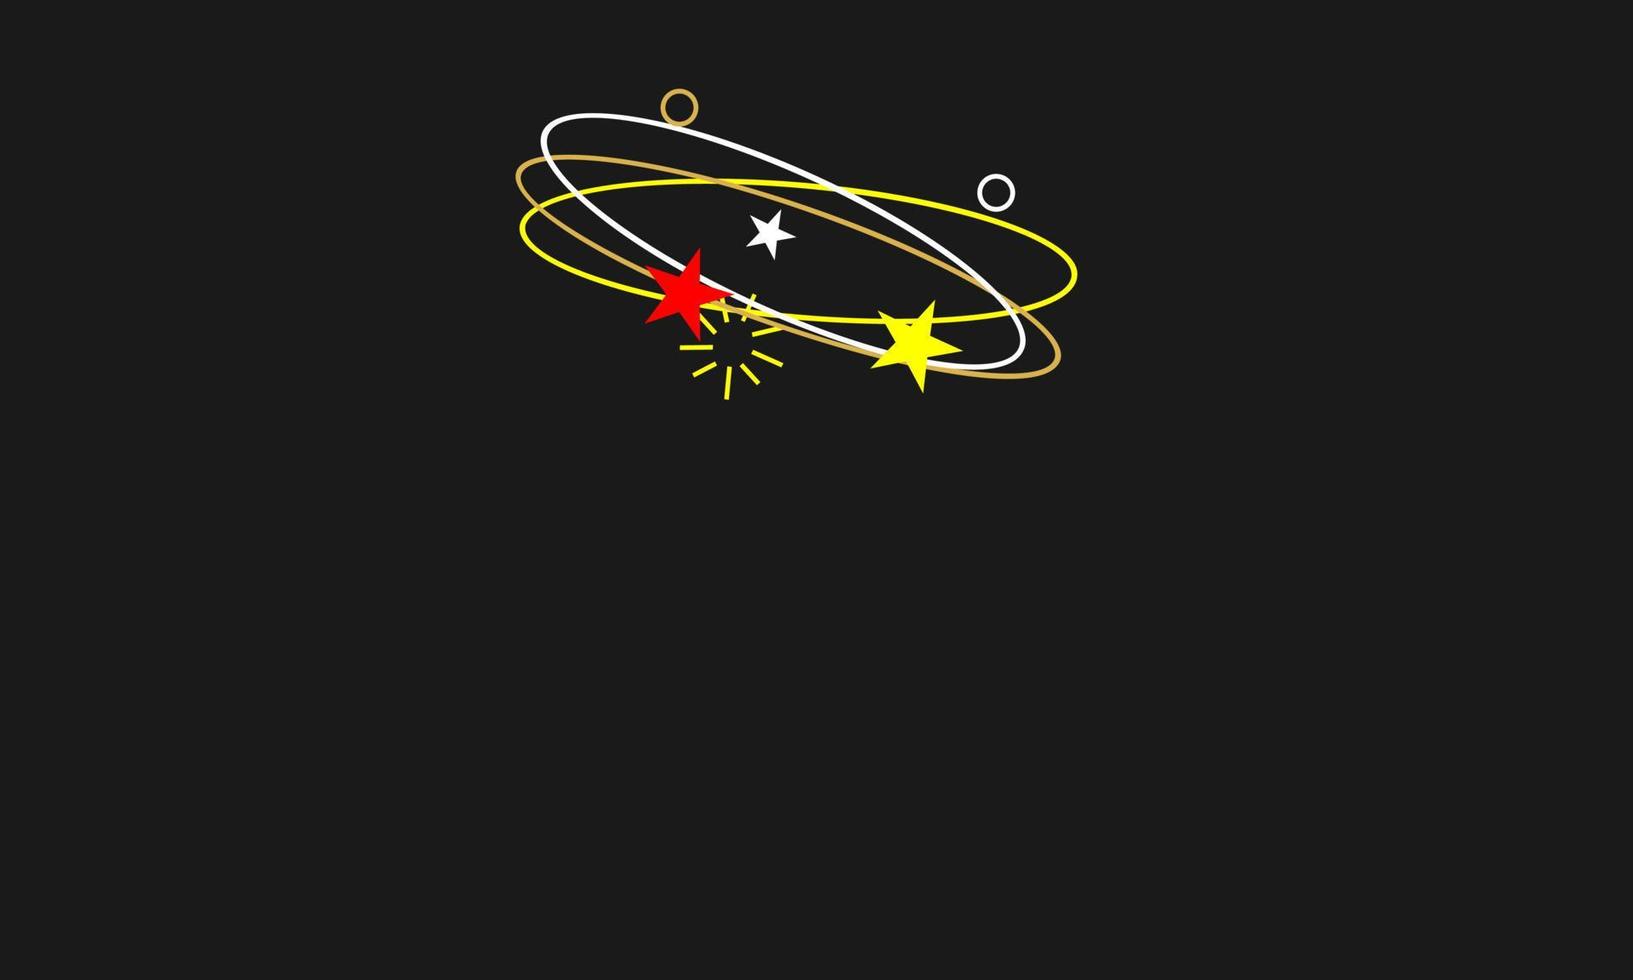 yrande uttryck. flygande stjärnor med omloppsbana spår vit, röd, gul färg på svart bakgrund. vektor